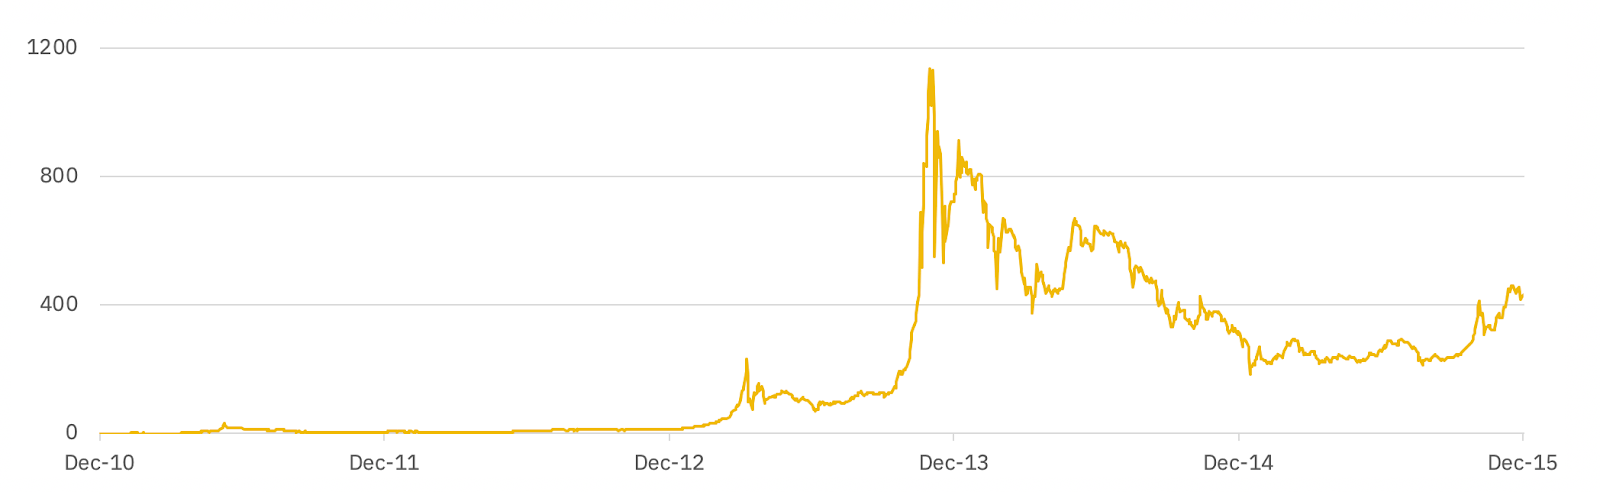 Bitcoin 1 Year Chart